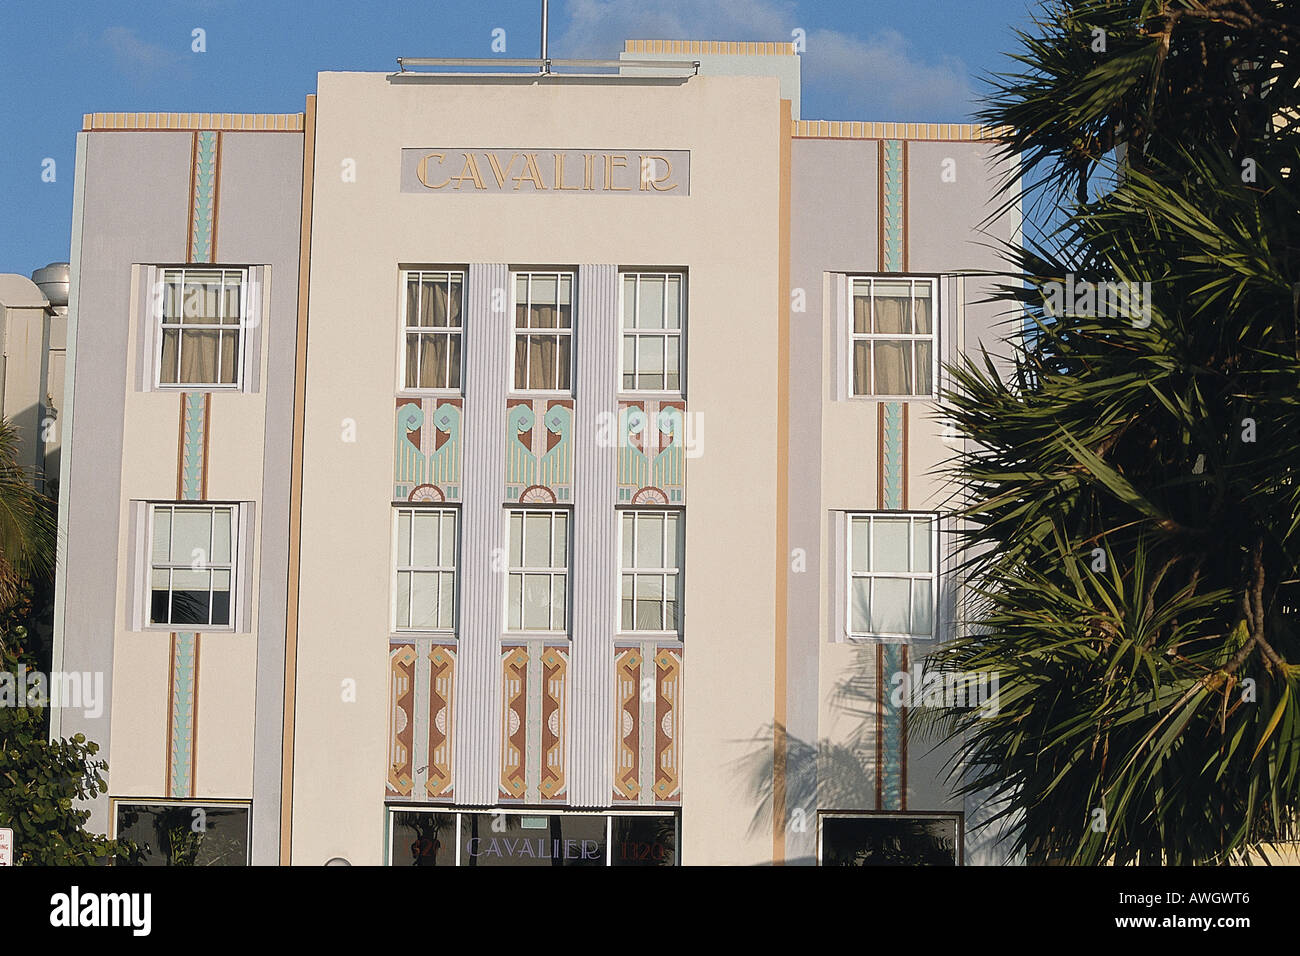 USA, Florida, Miami, Ocean Drive, Cavalier Hotel, Art Deco façade Stock Photo